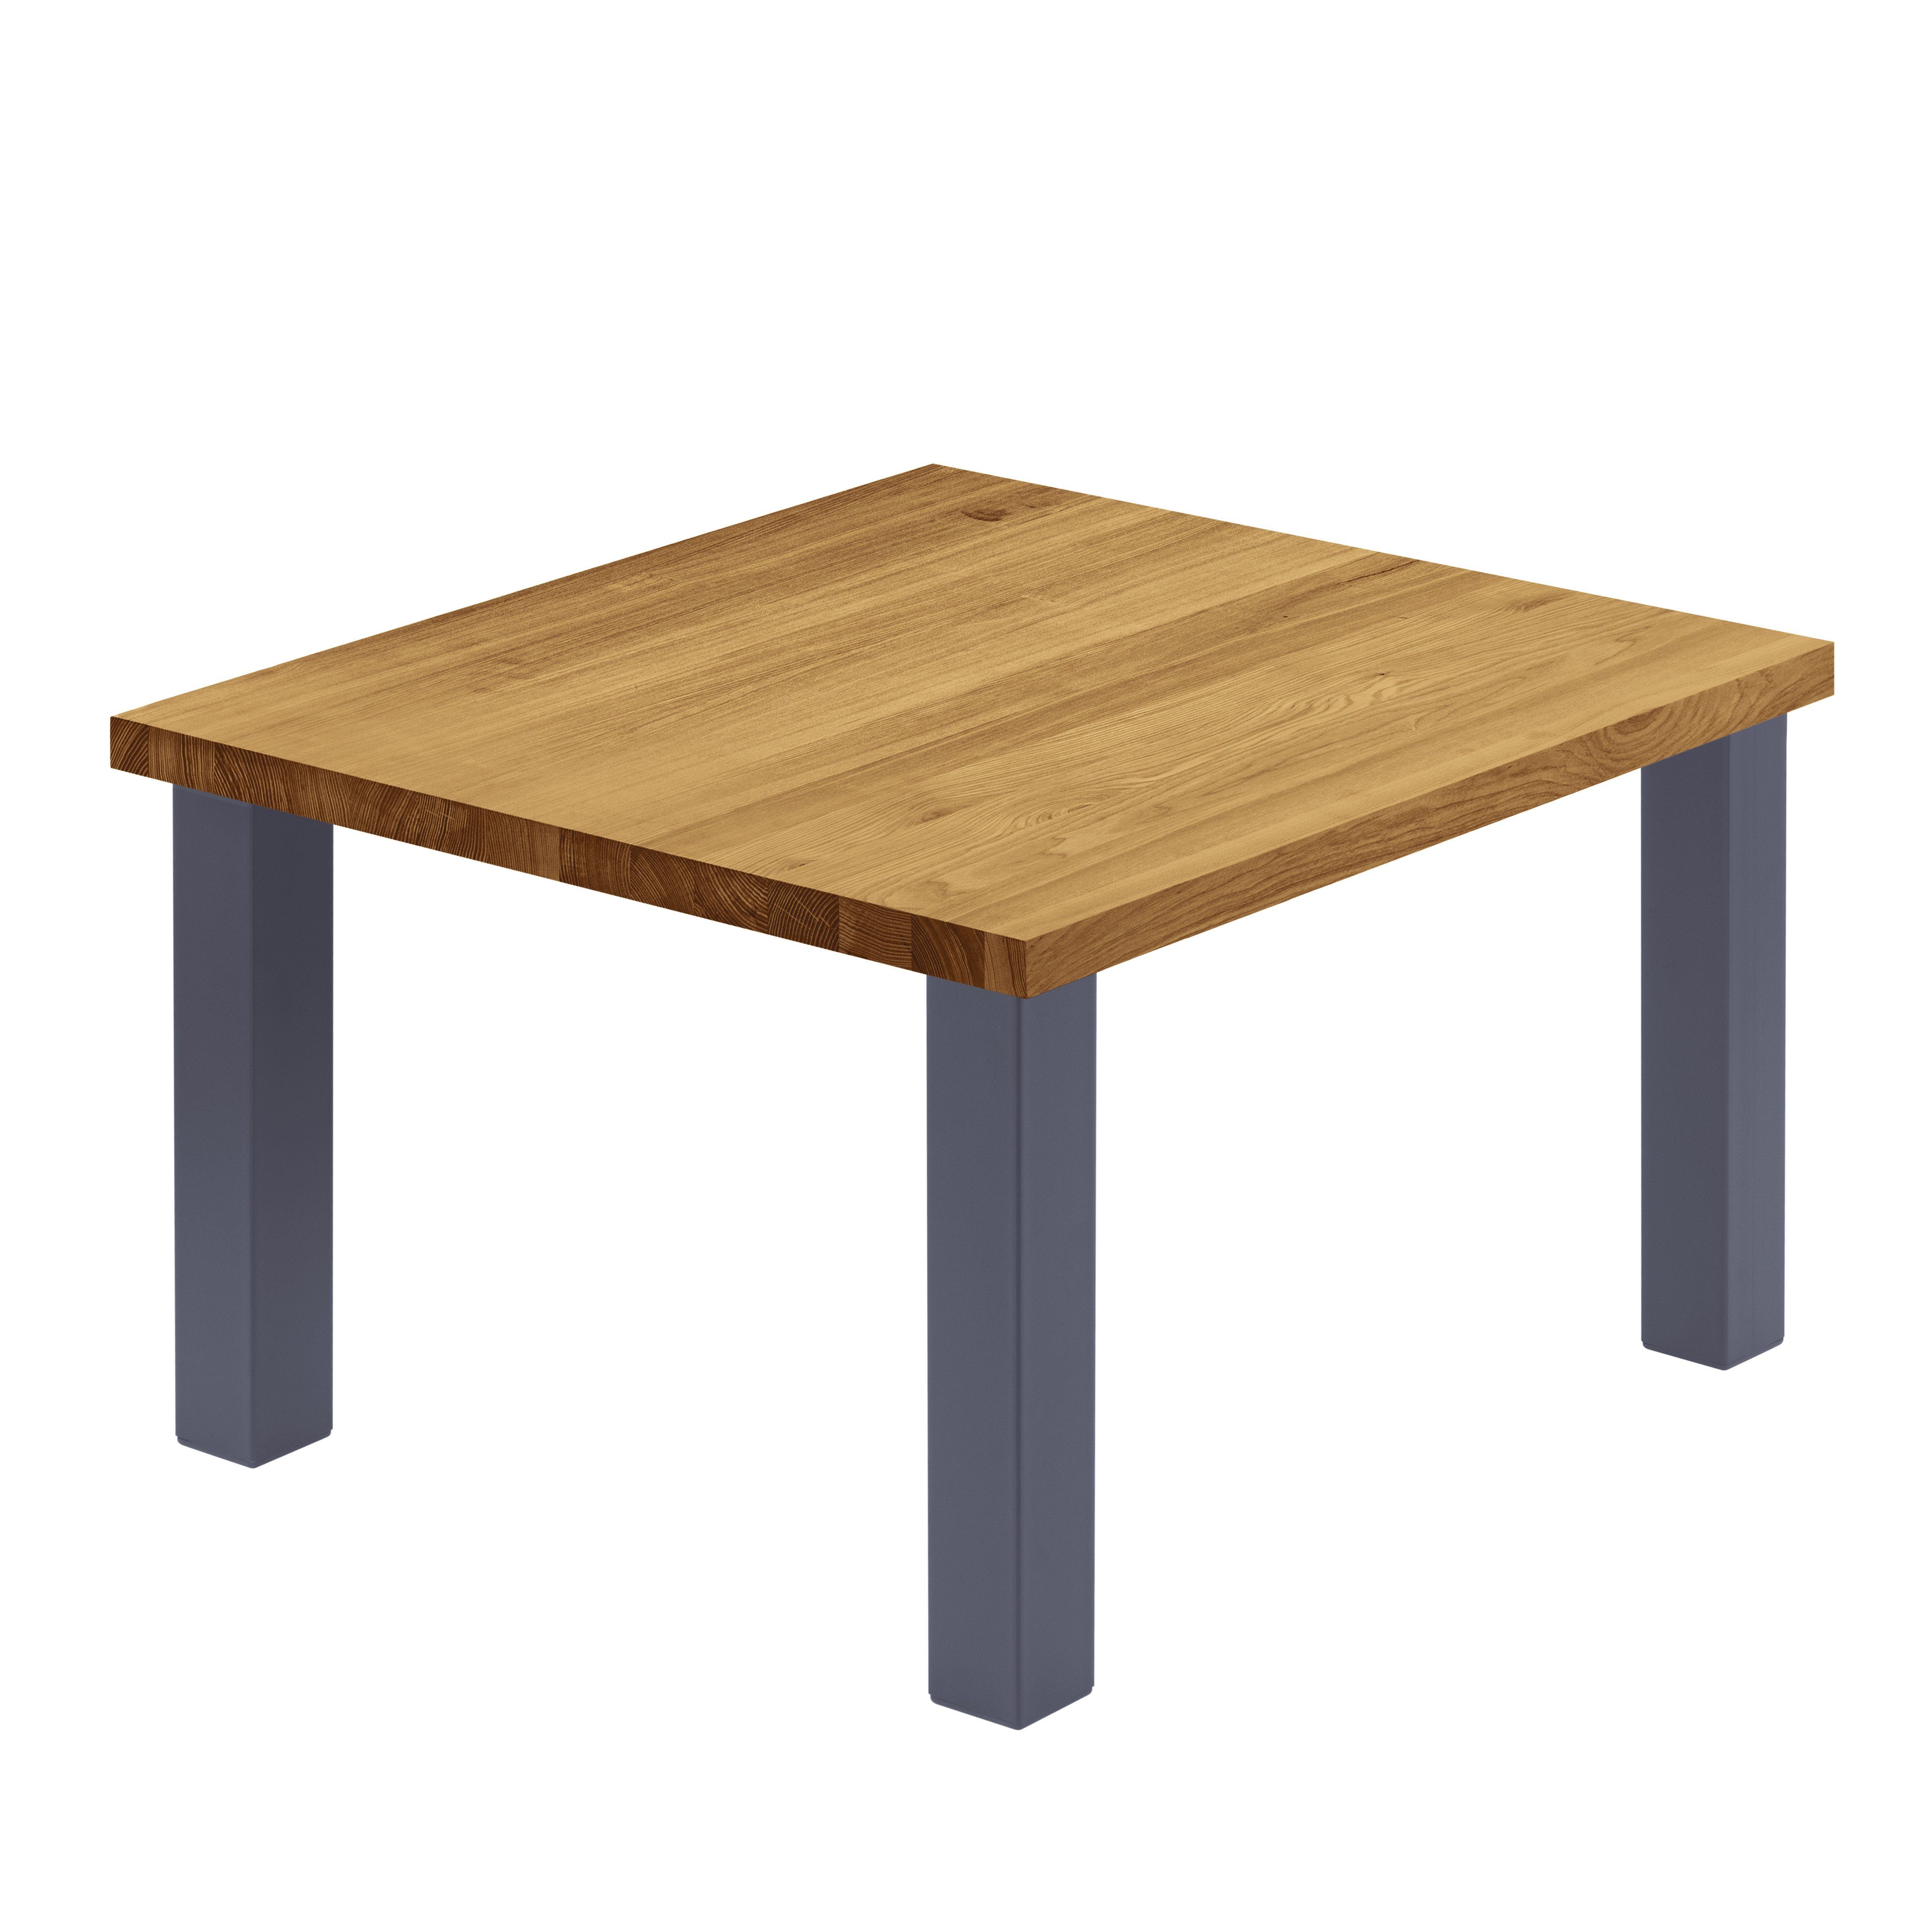 (1 LAMO inkl. Esstisch Metallgestell Anthrazit Manufaktur Tischplatte | Tisch), gerade Kante Rustikal Classic Massivholz Küchentisch